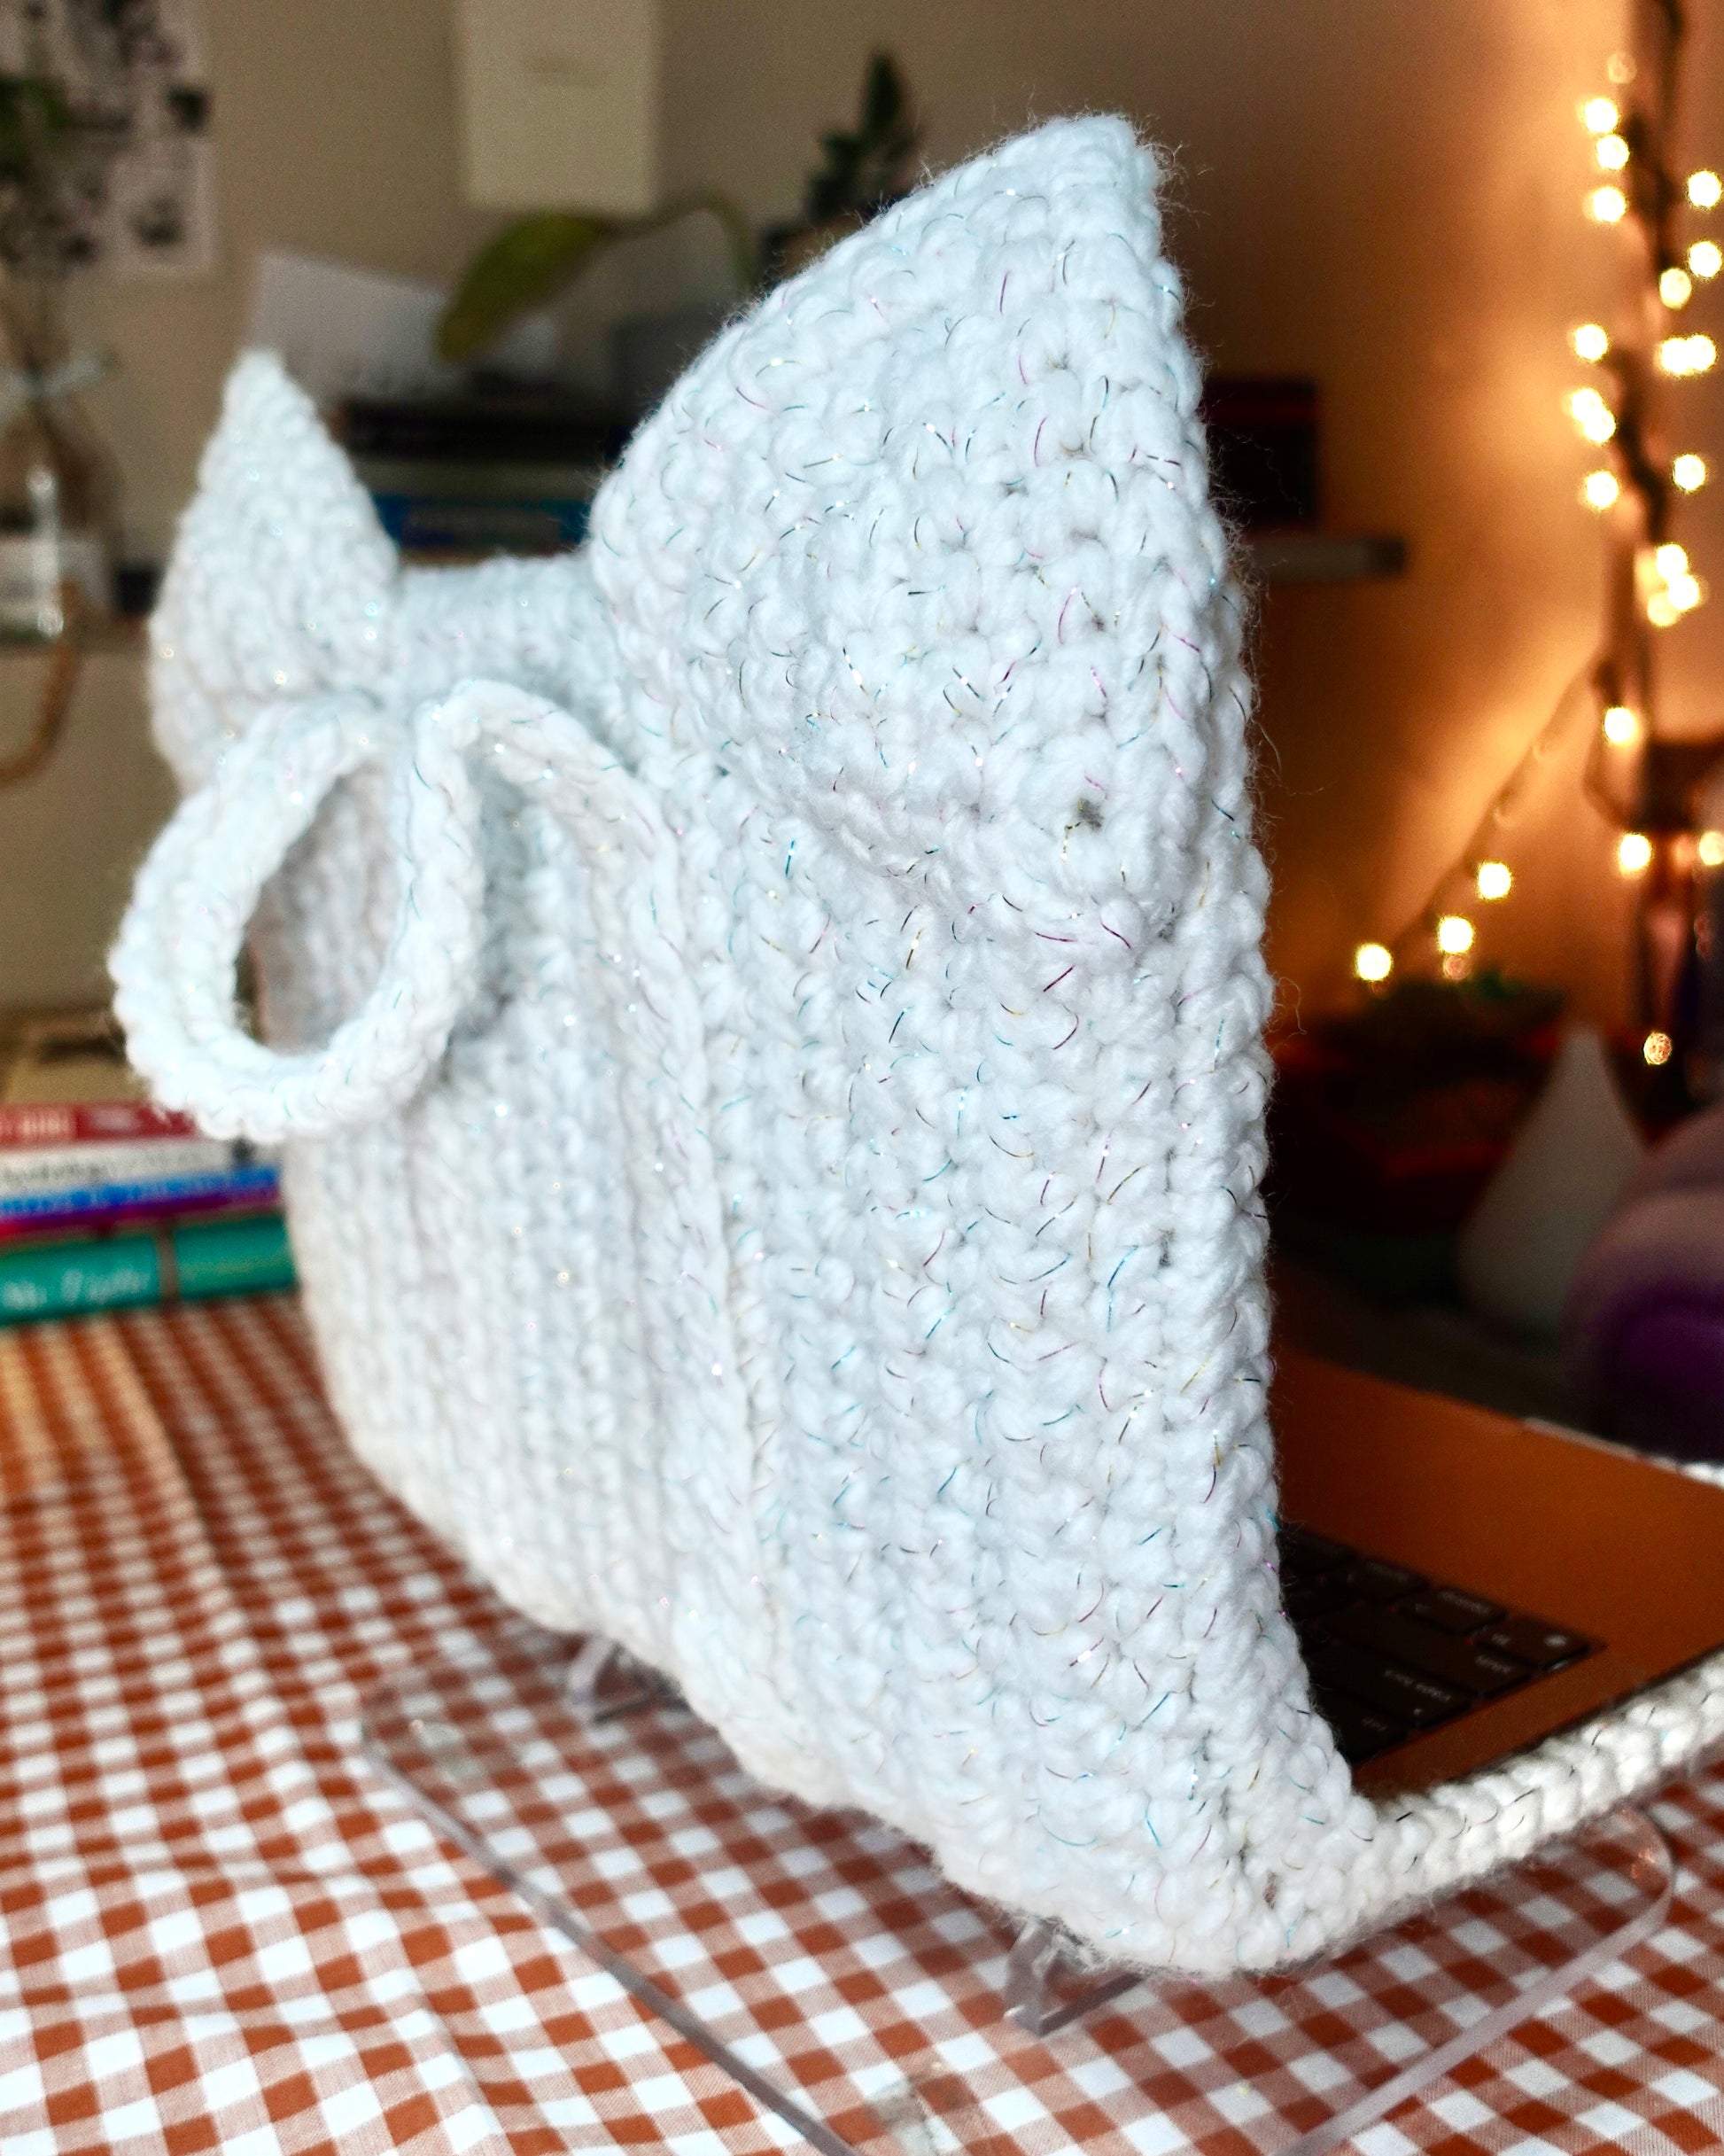 crochet book sleeve + bag pattern – Biyabimi